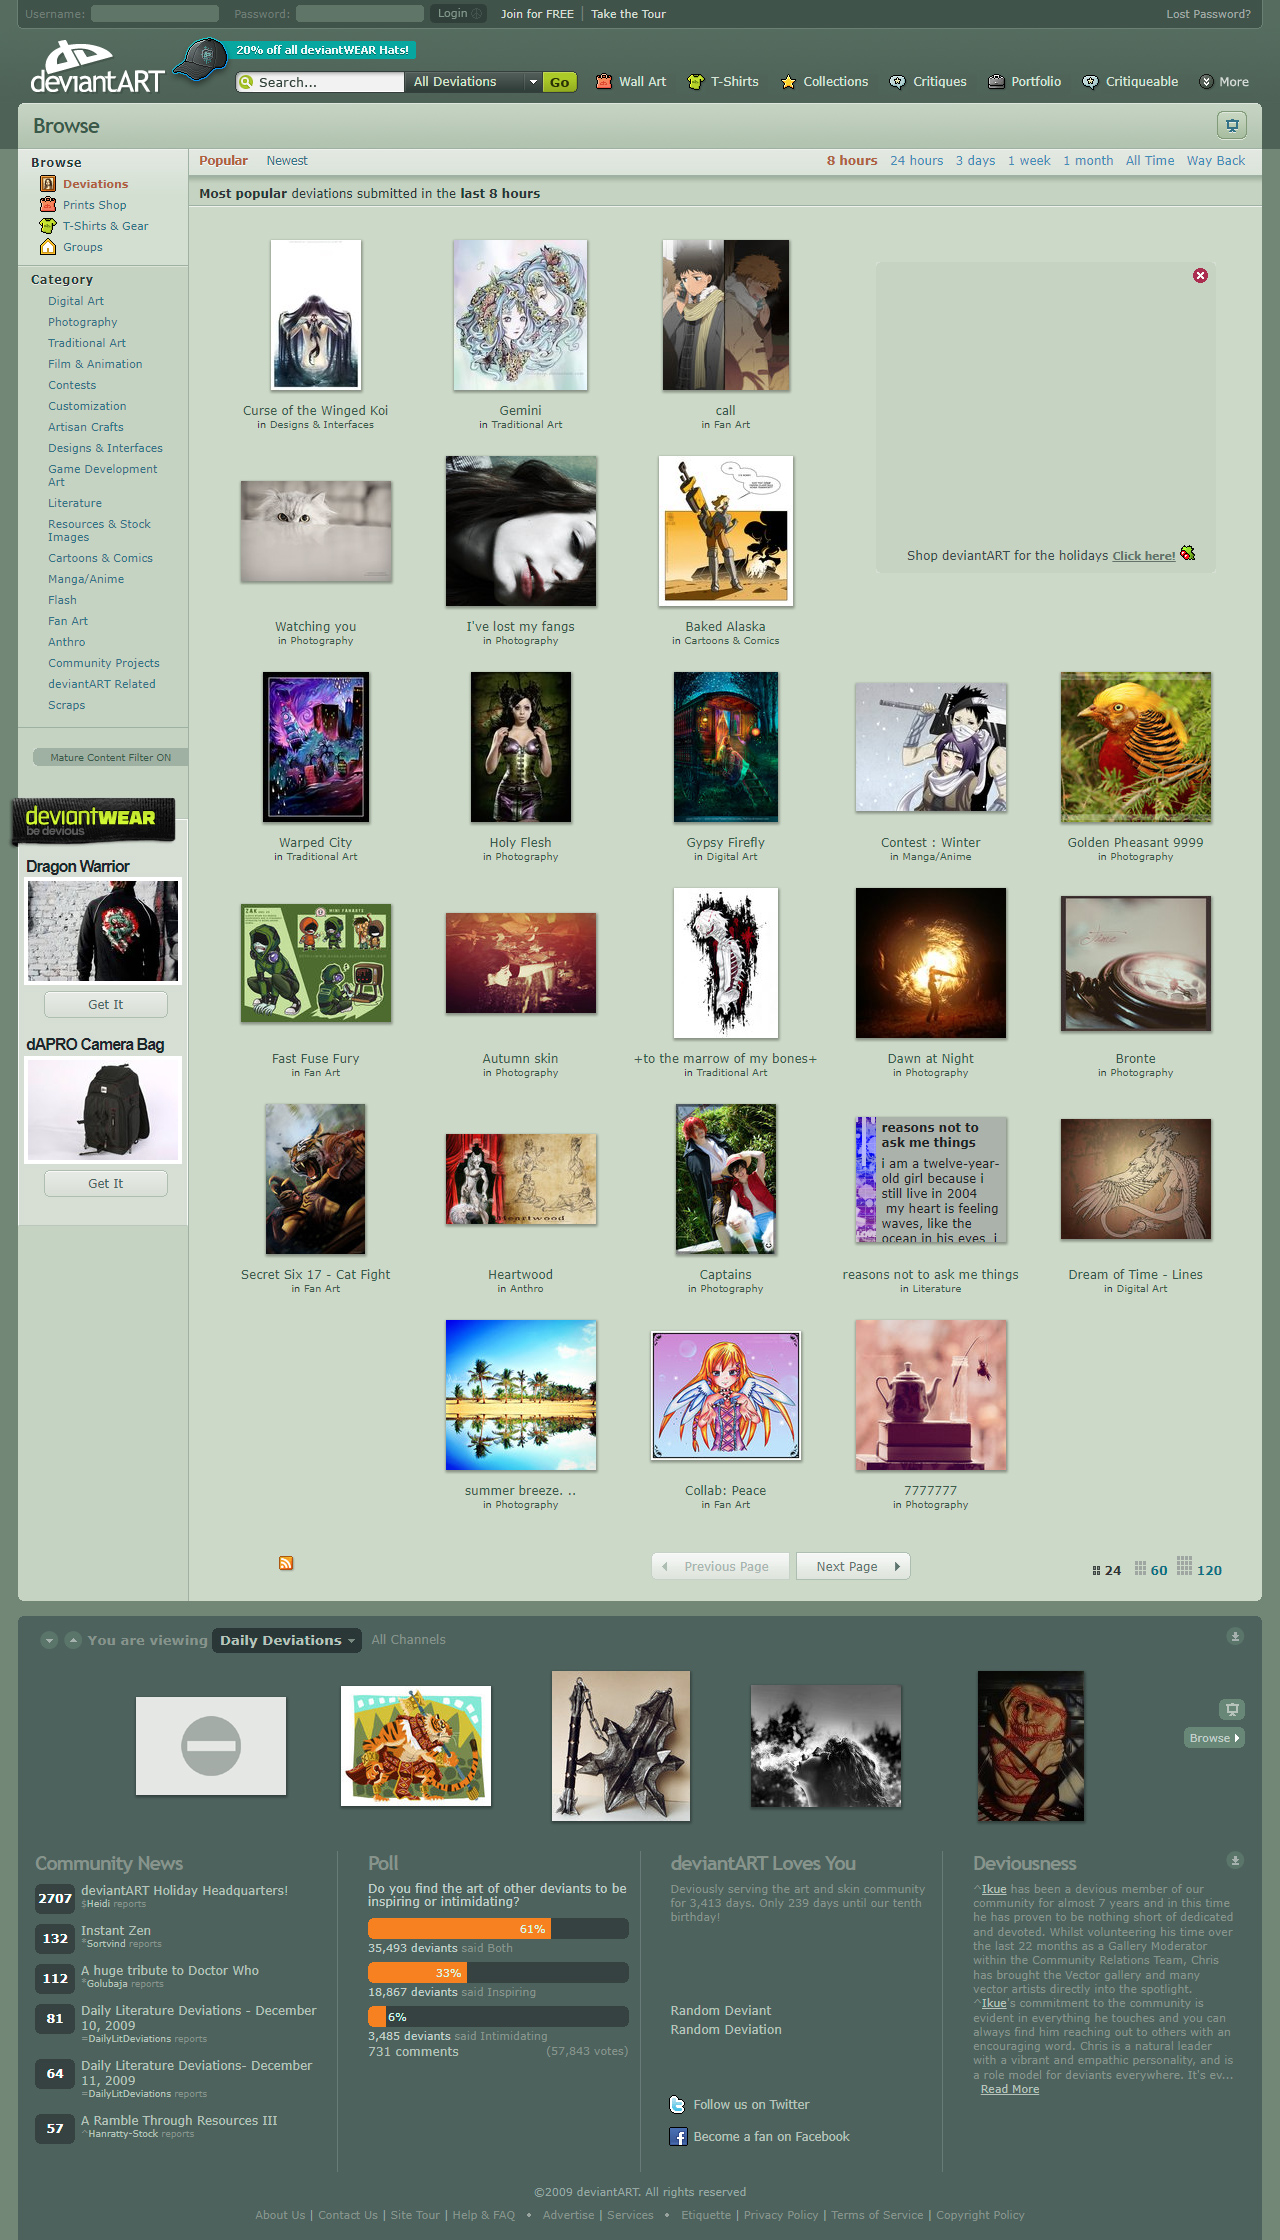 DeviantArt website in 2009